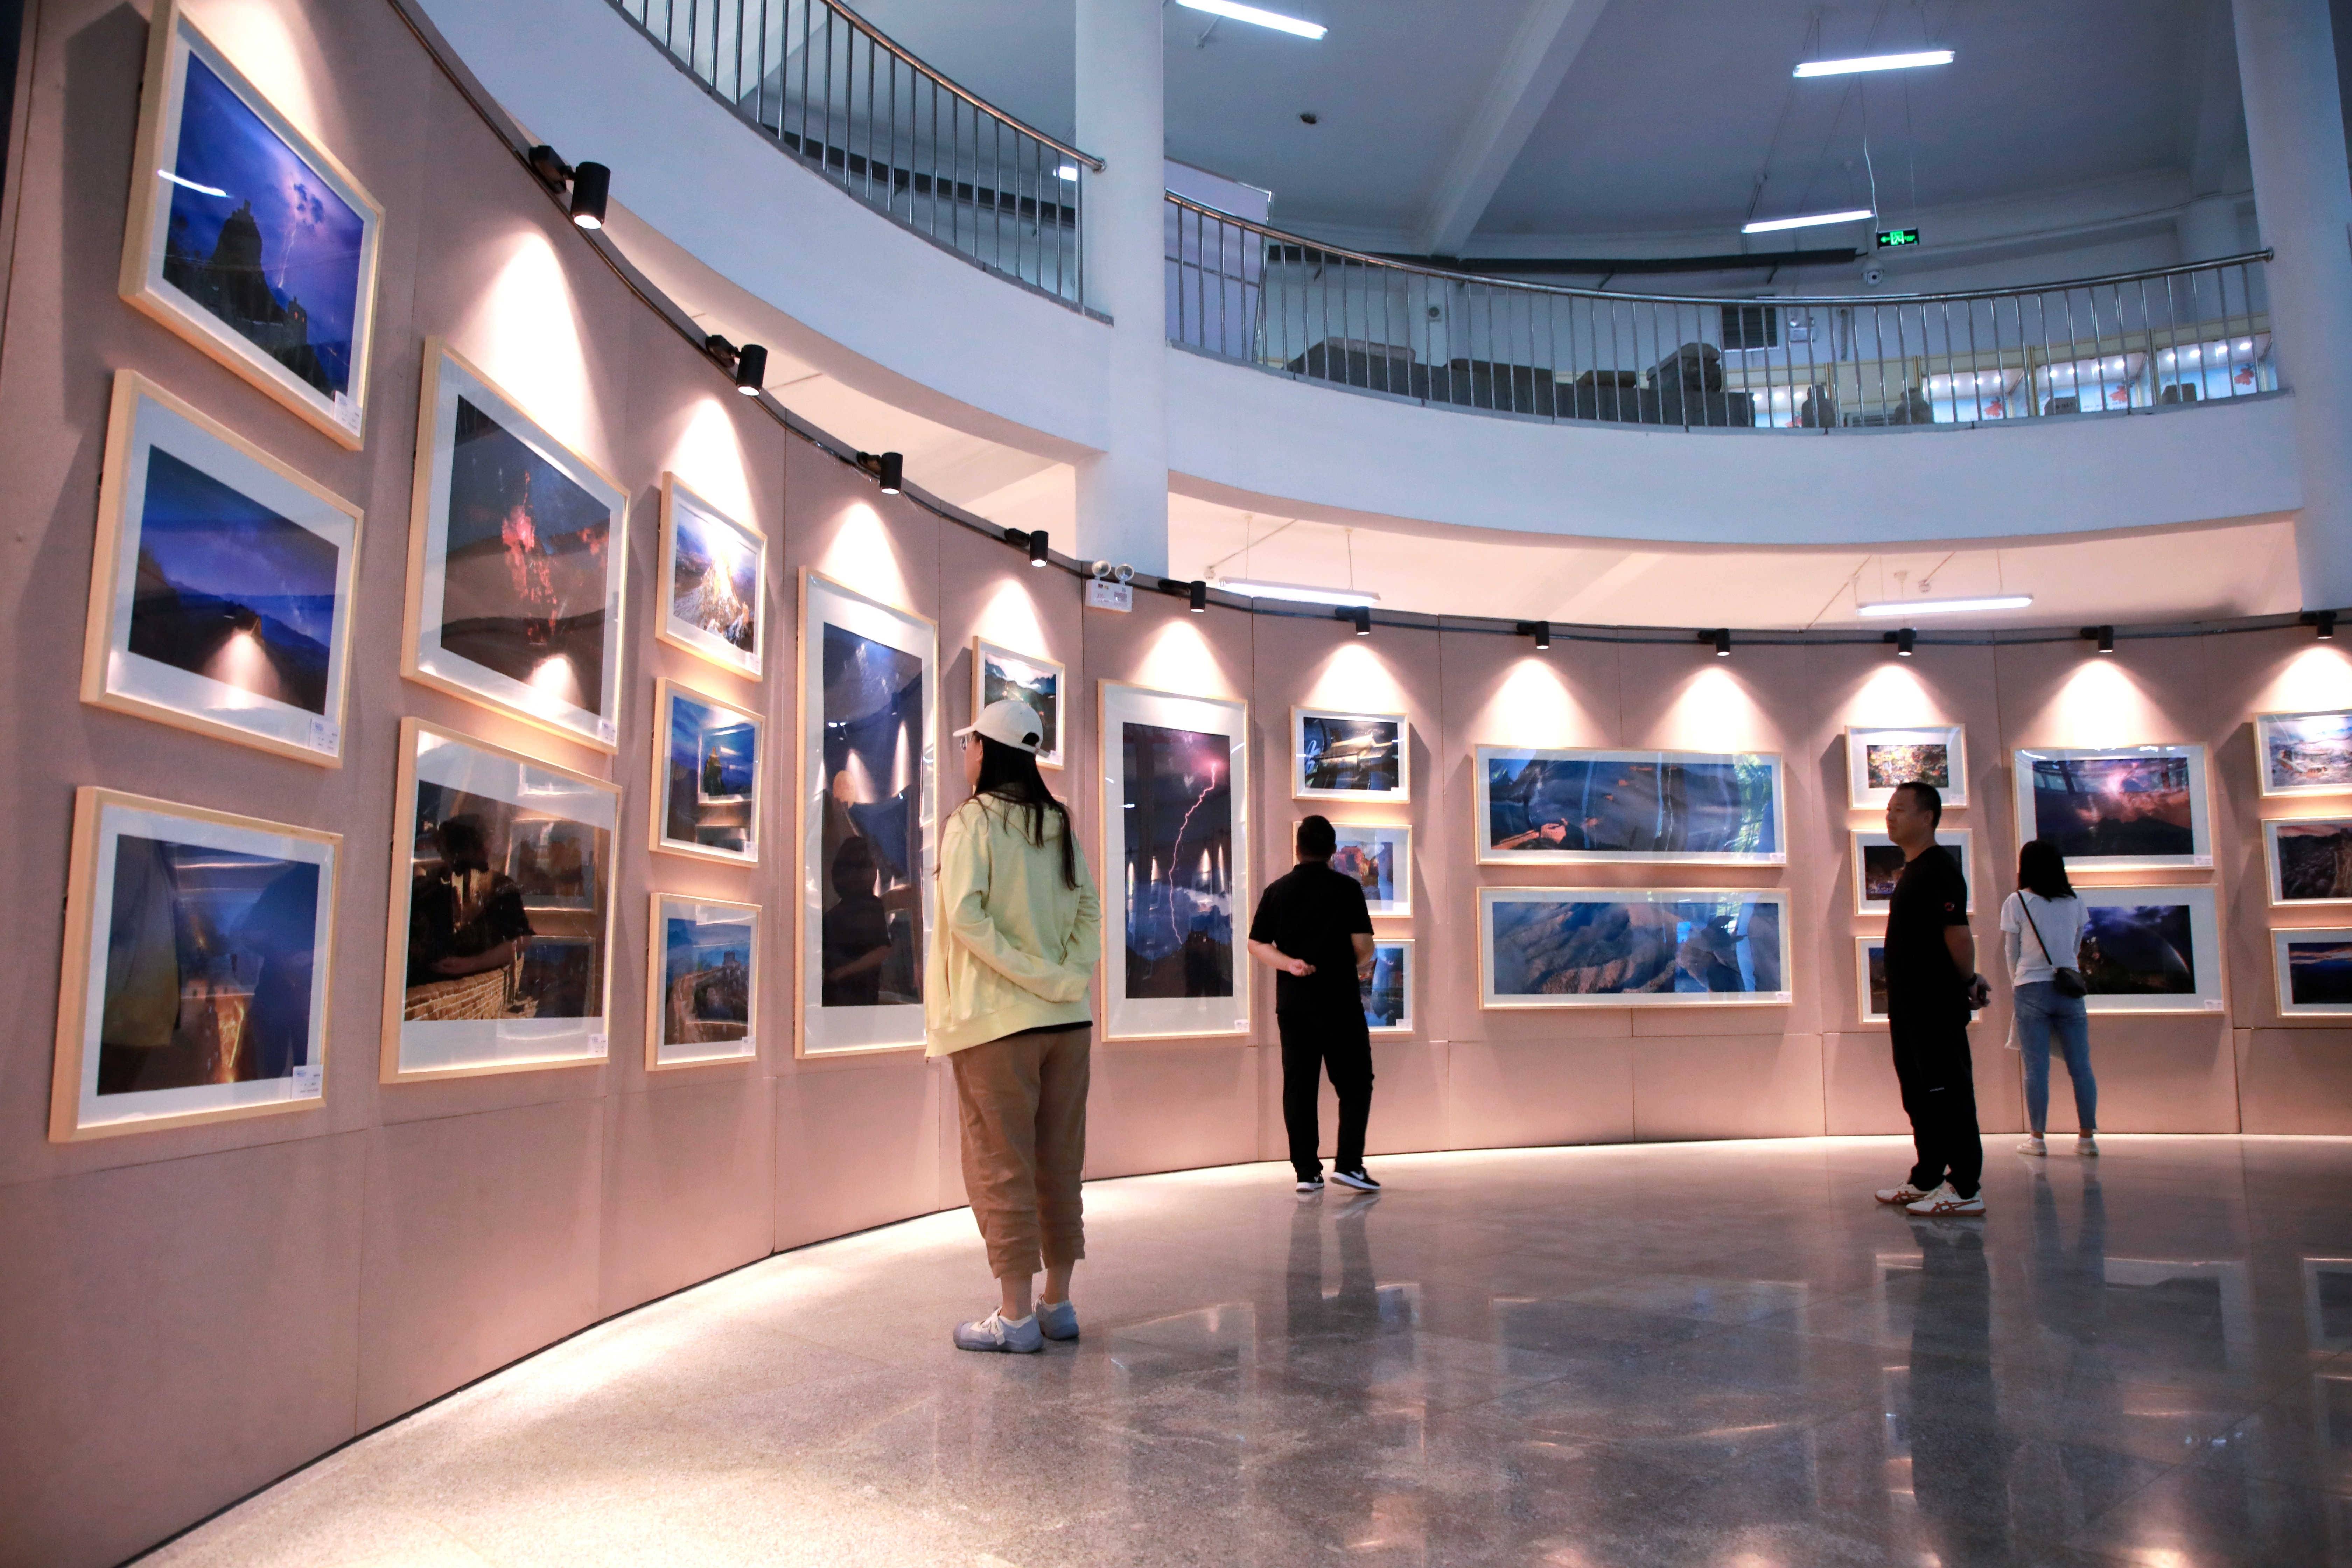 天然大氧吧——长城之约 休闲之都摄影作品展在密云区博物馆正式开幕